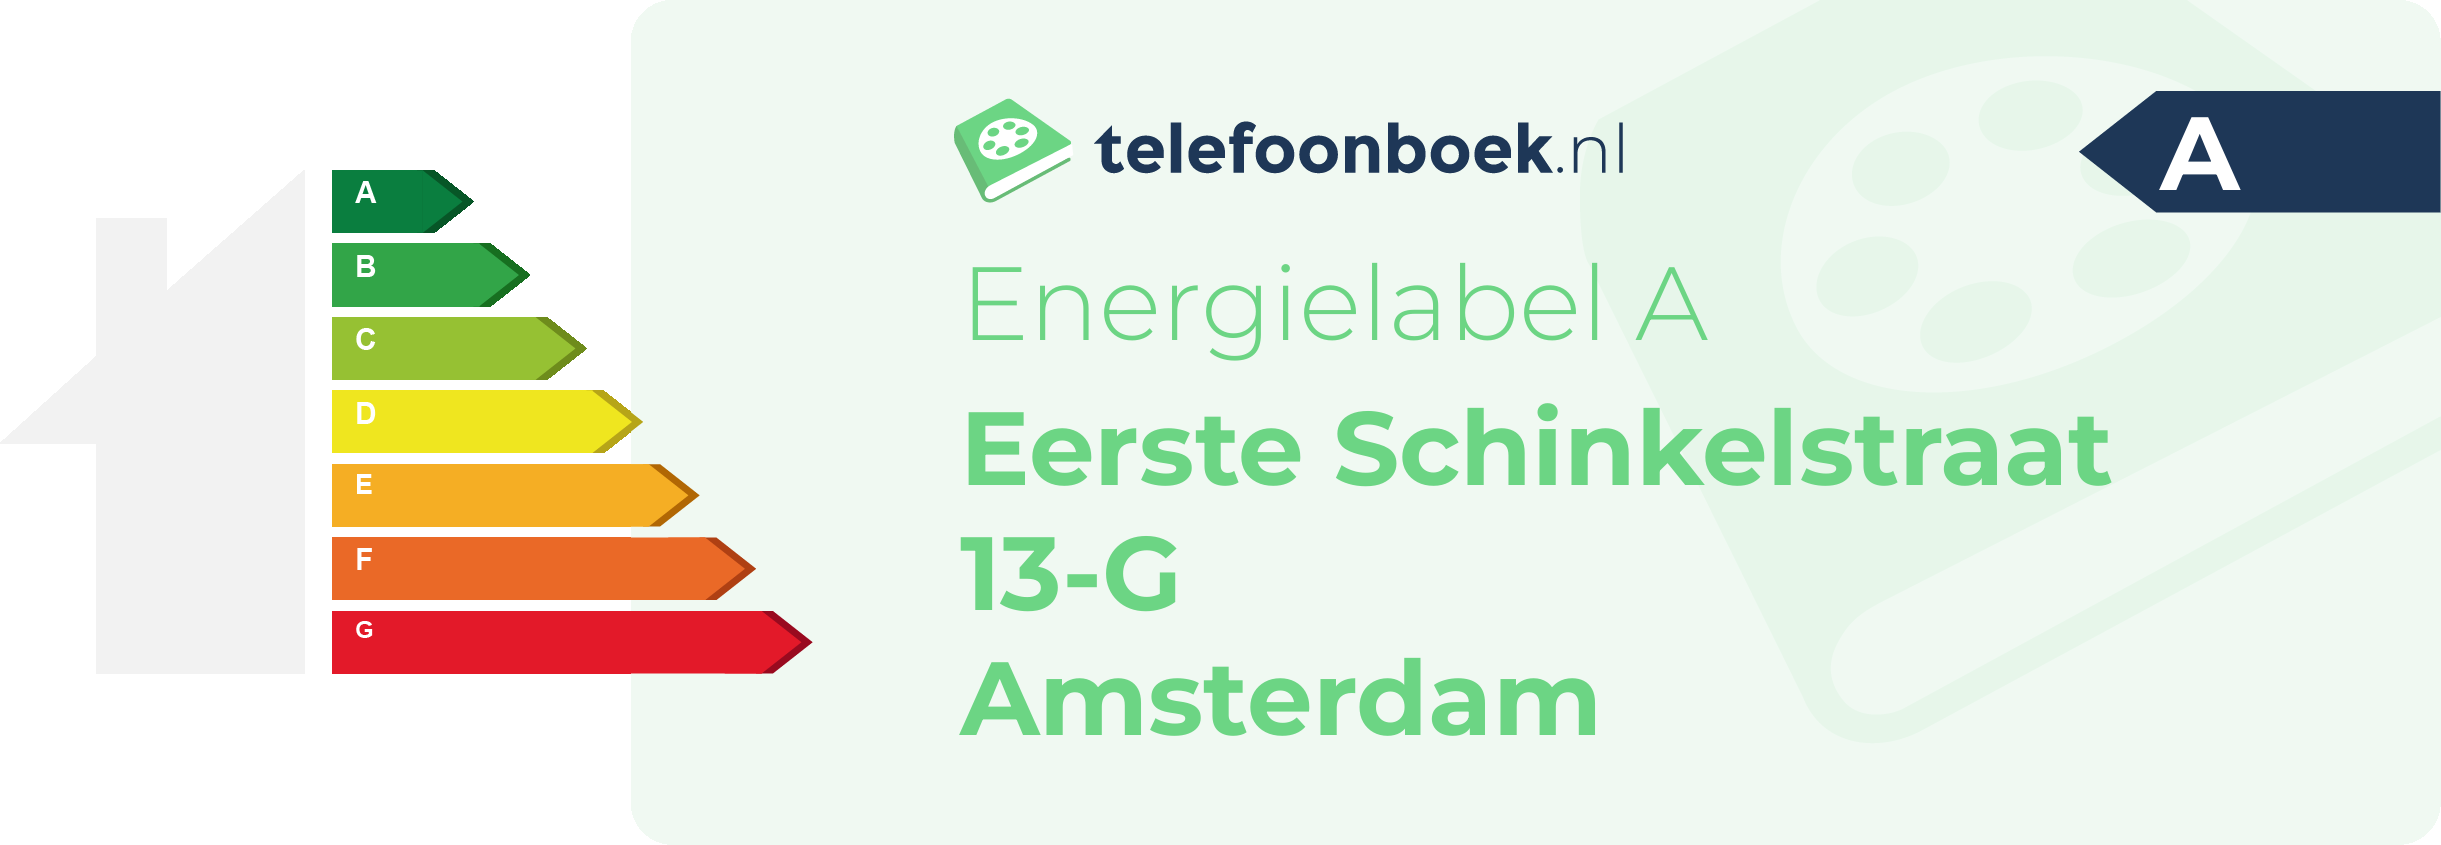 Energielabel Eerste Schinkelstraat 13-G Amsterdam